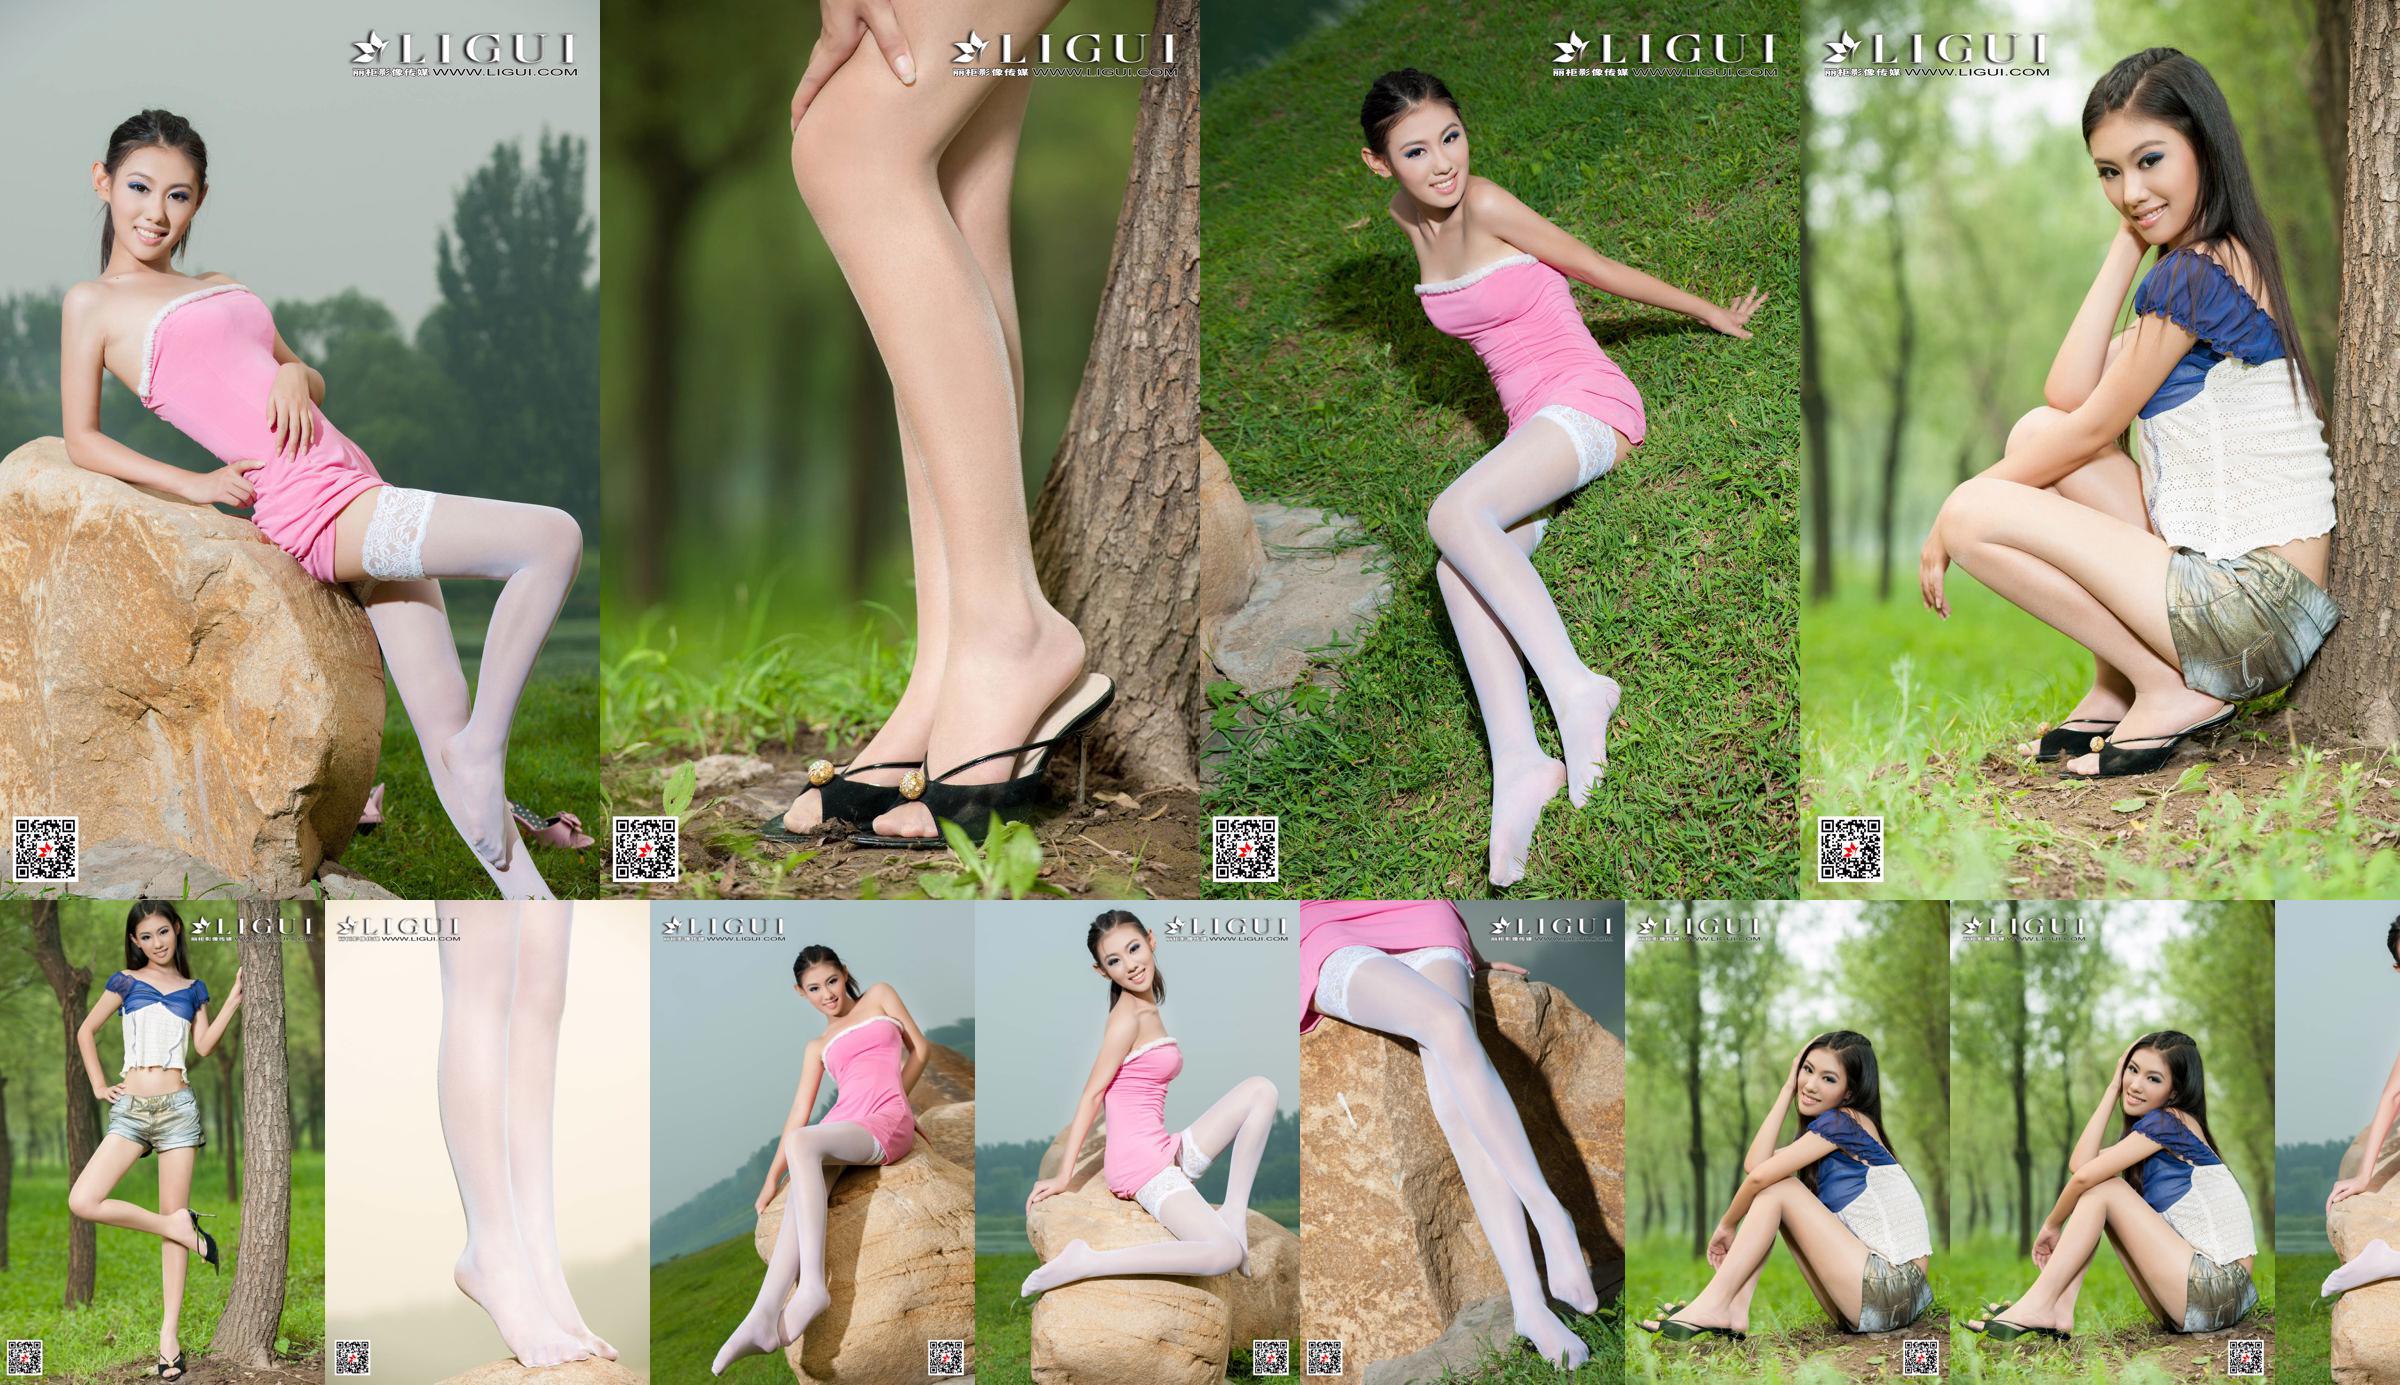 [丽柜 Ligui] นางแบบ Wei Ling "Long Leg Girl" ขาสวย No.118d61 หน้า 5